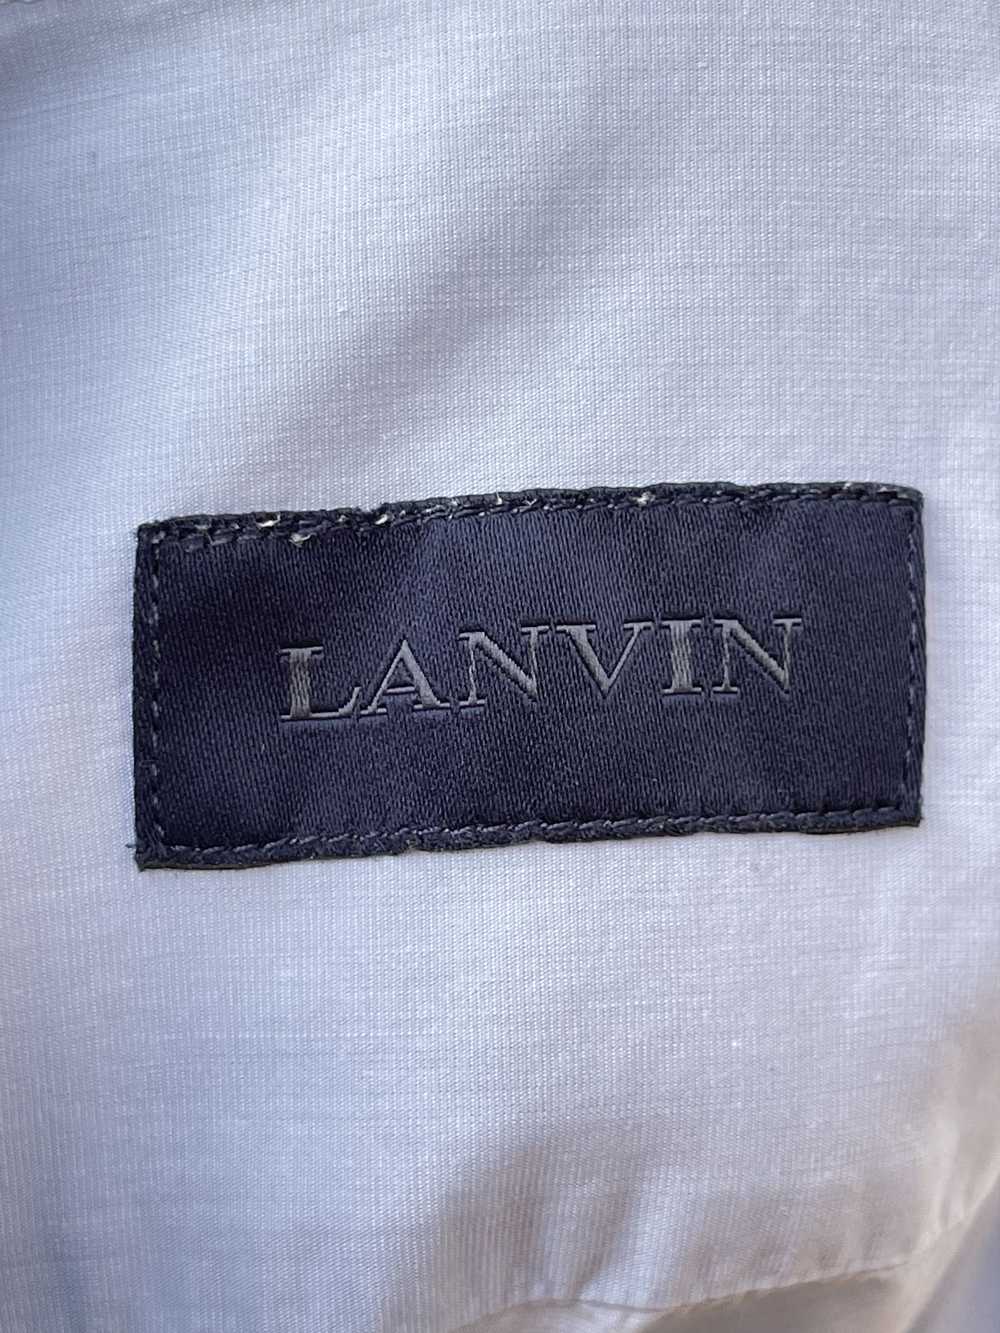 Lanvin 🔥 Lanvin Paris luxury shirt size Small co… - image 7